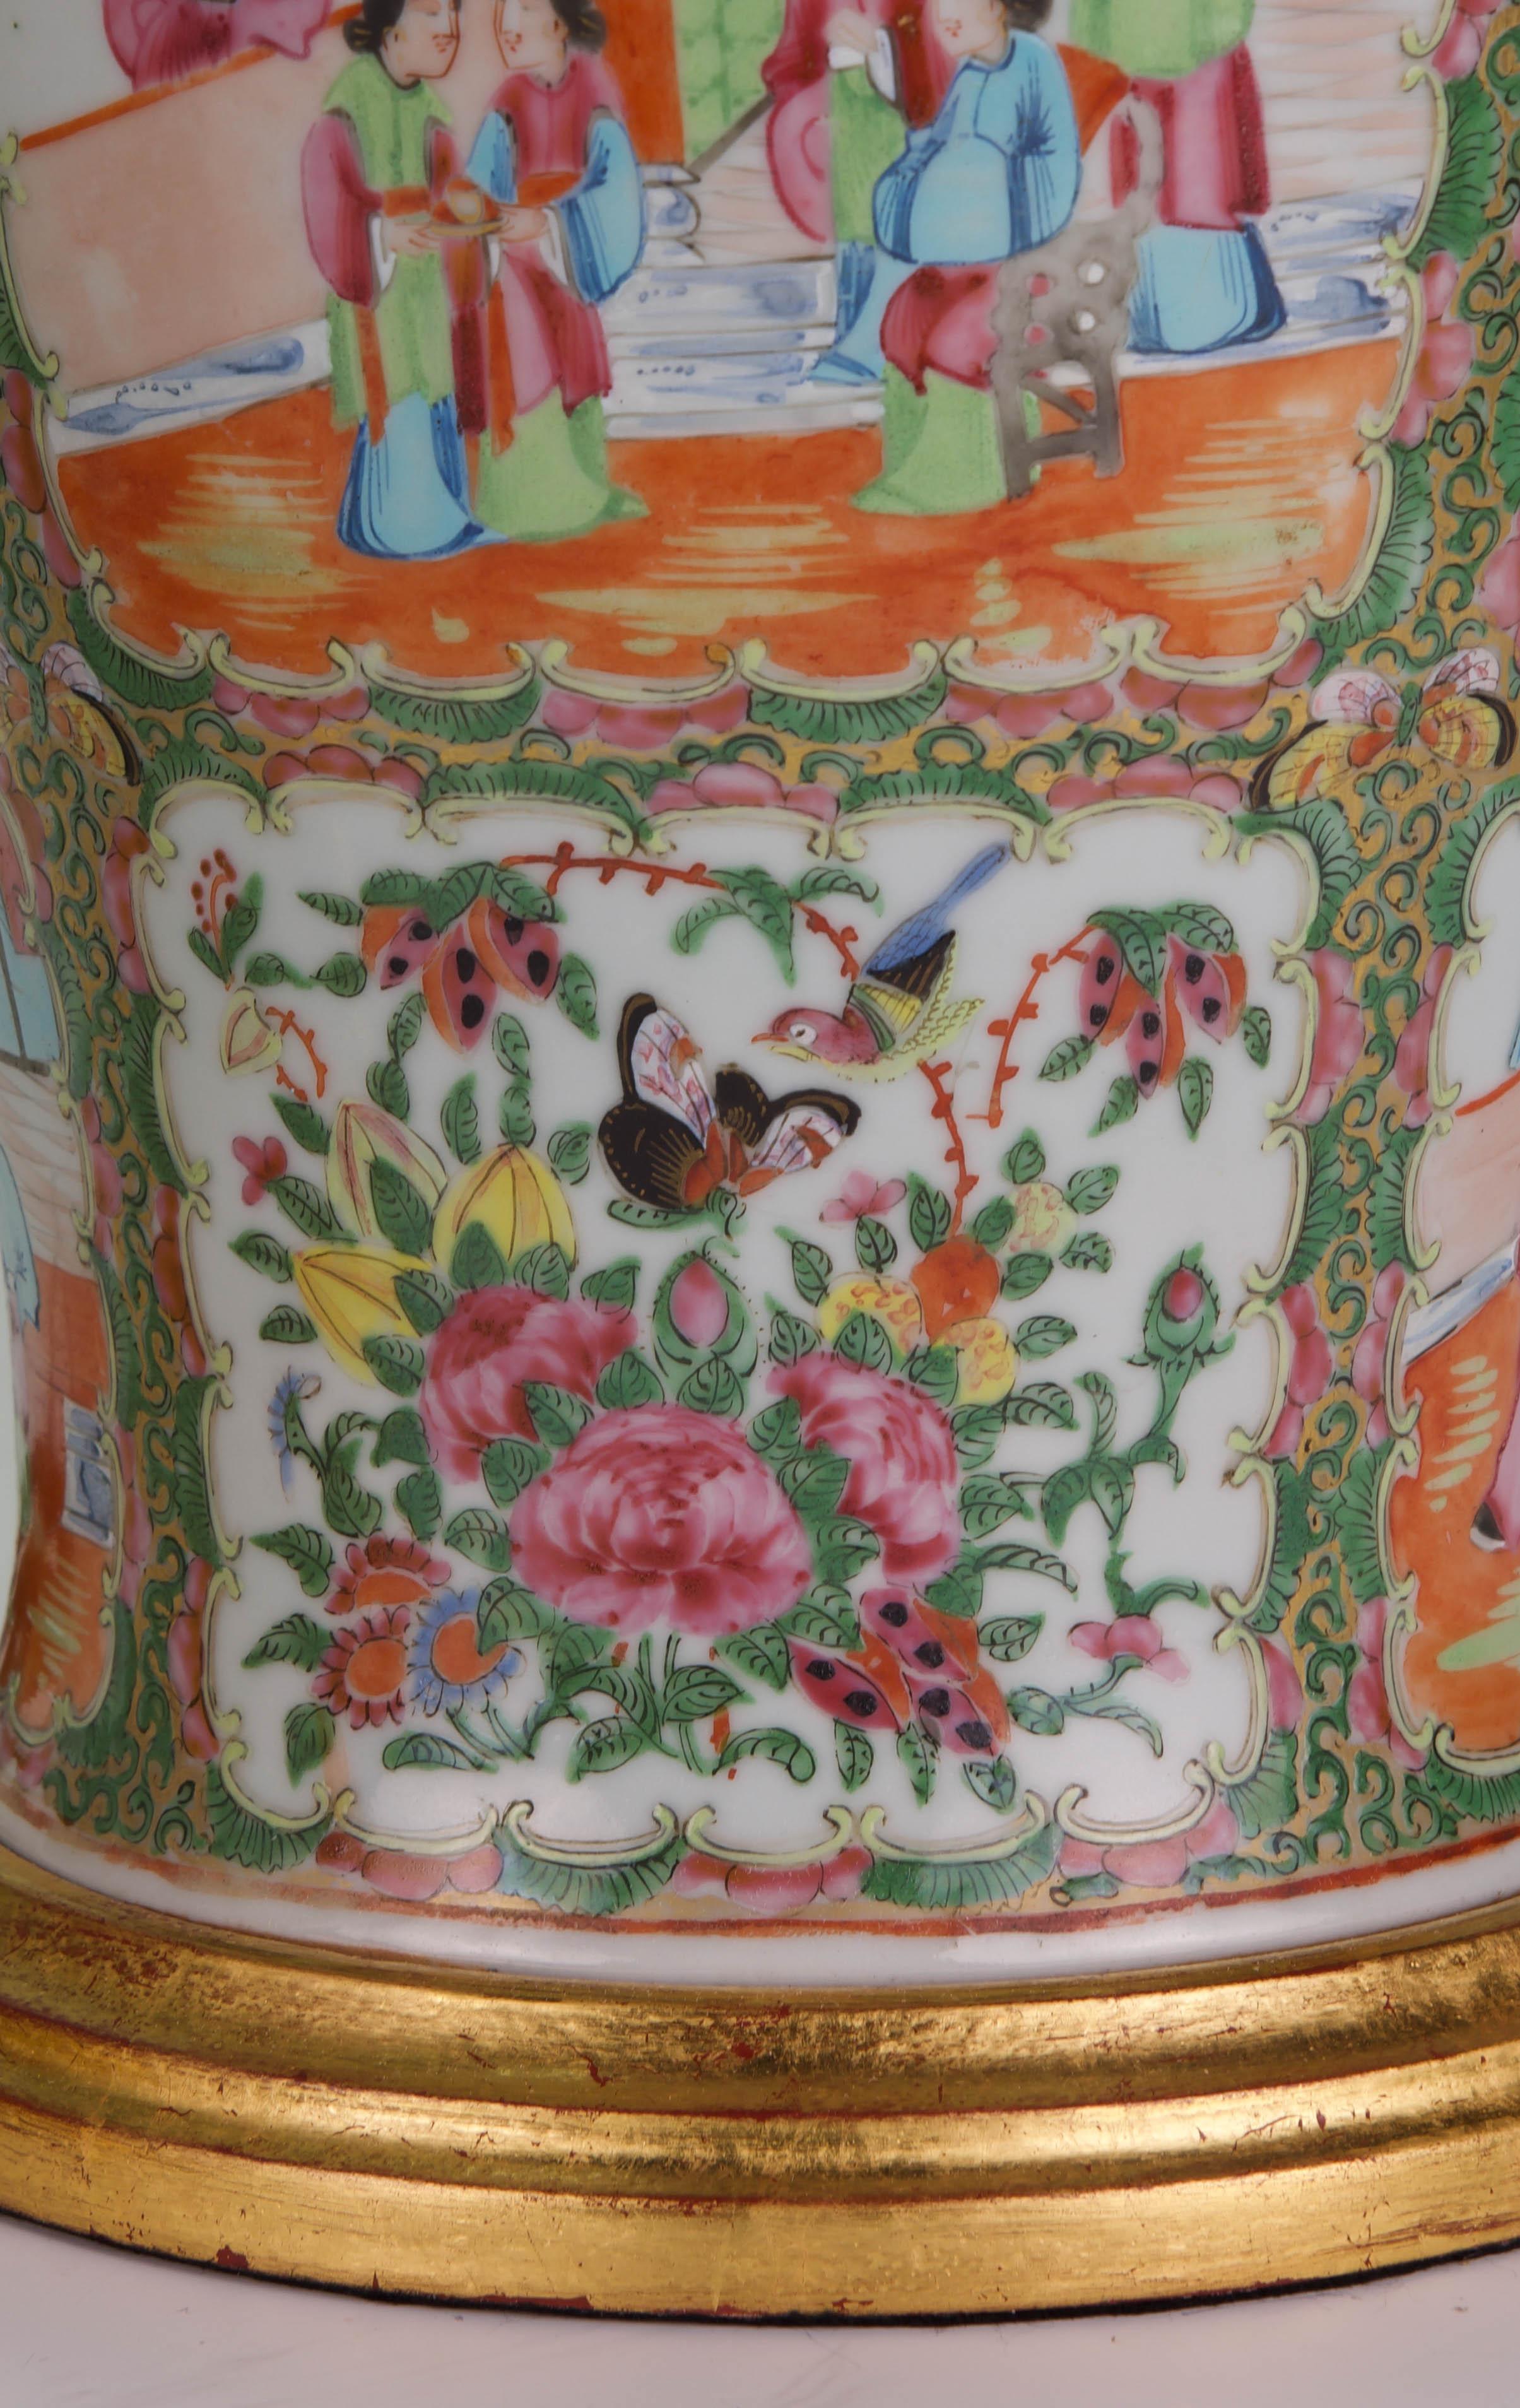 Vernissé Paire de lampes de bureau anciennes chinoises en porcelaine de Canton du 19ème siècle, en forme de balustre en vente